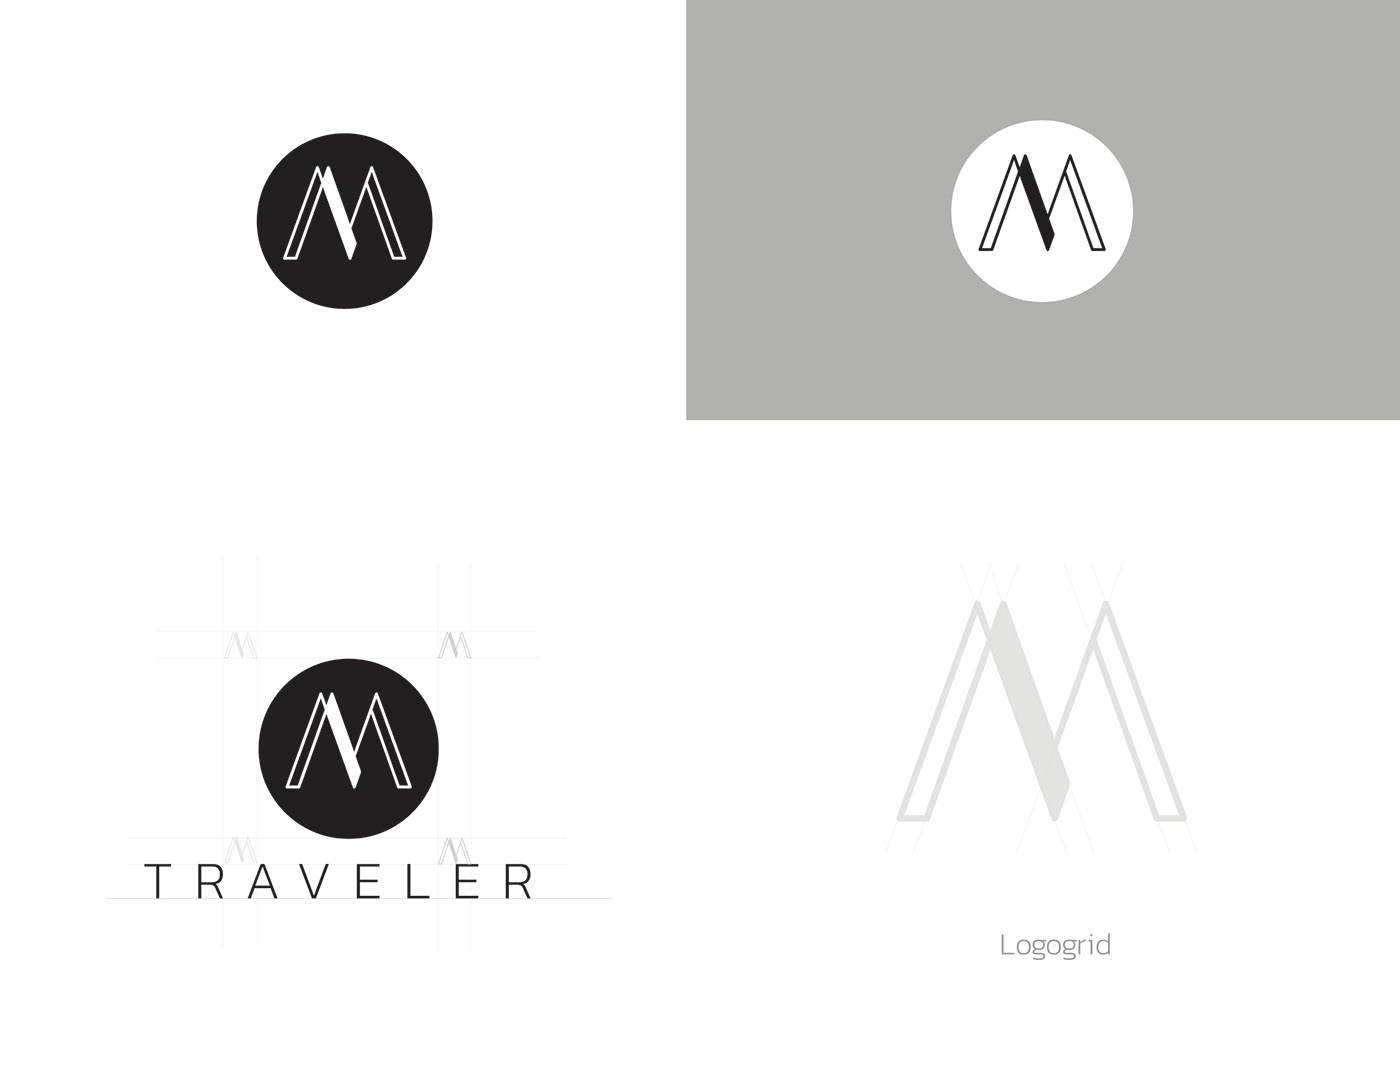 brand brand identity branding  design logos Logotype typography   visual identity Adobe Portfolio